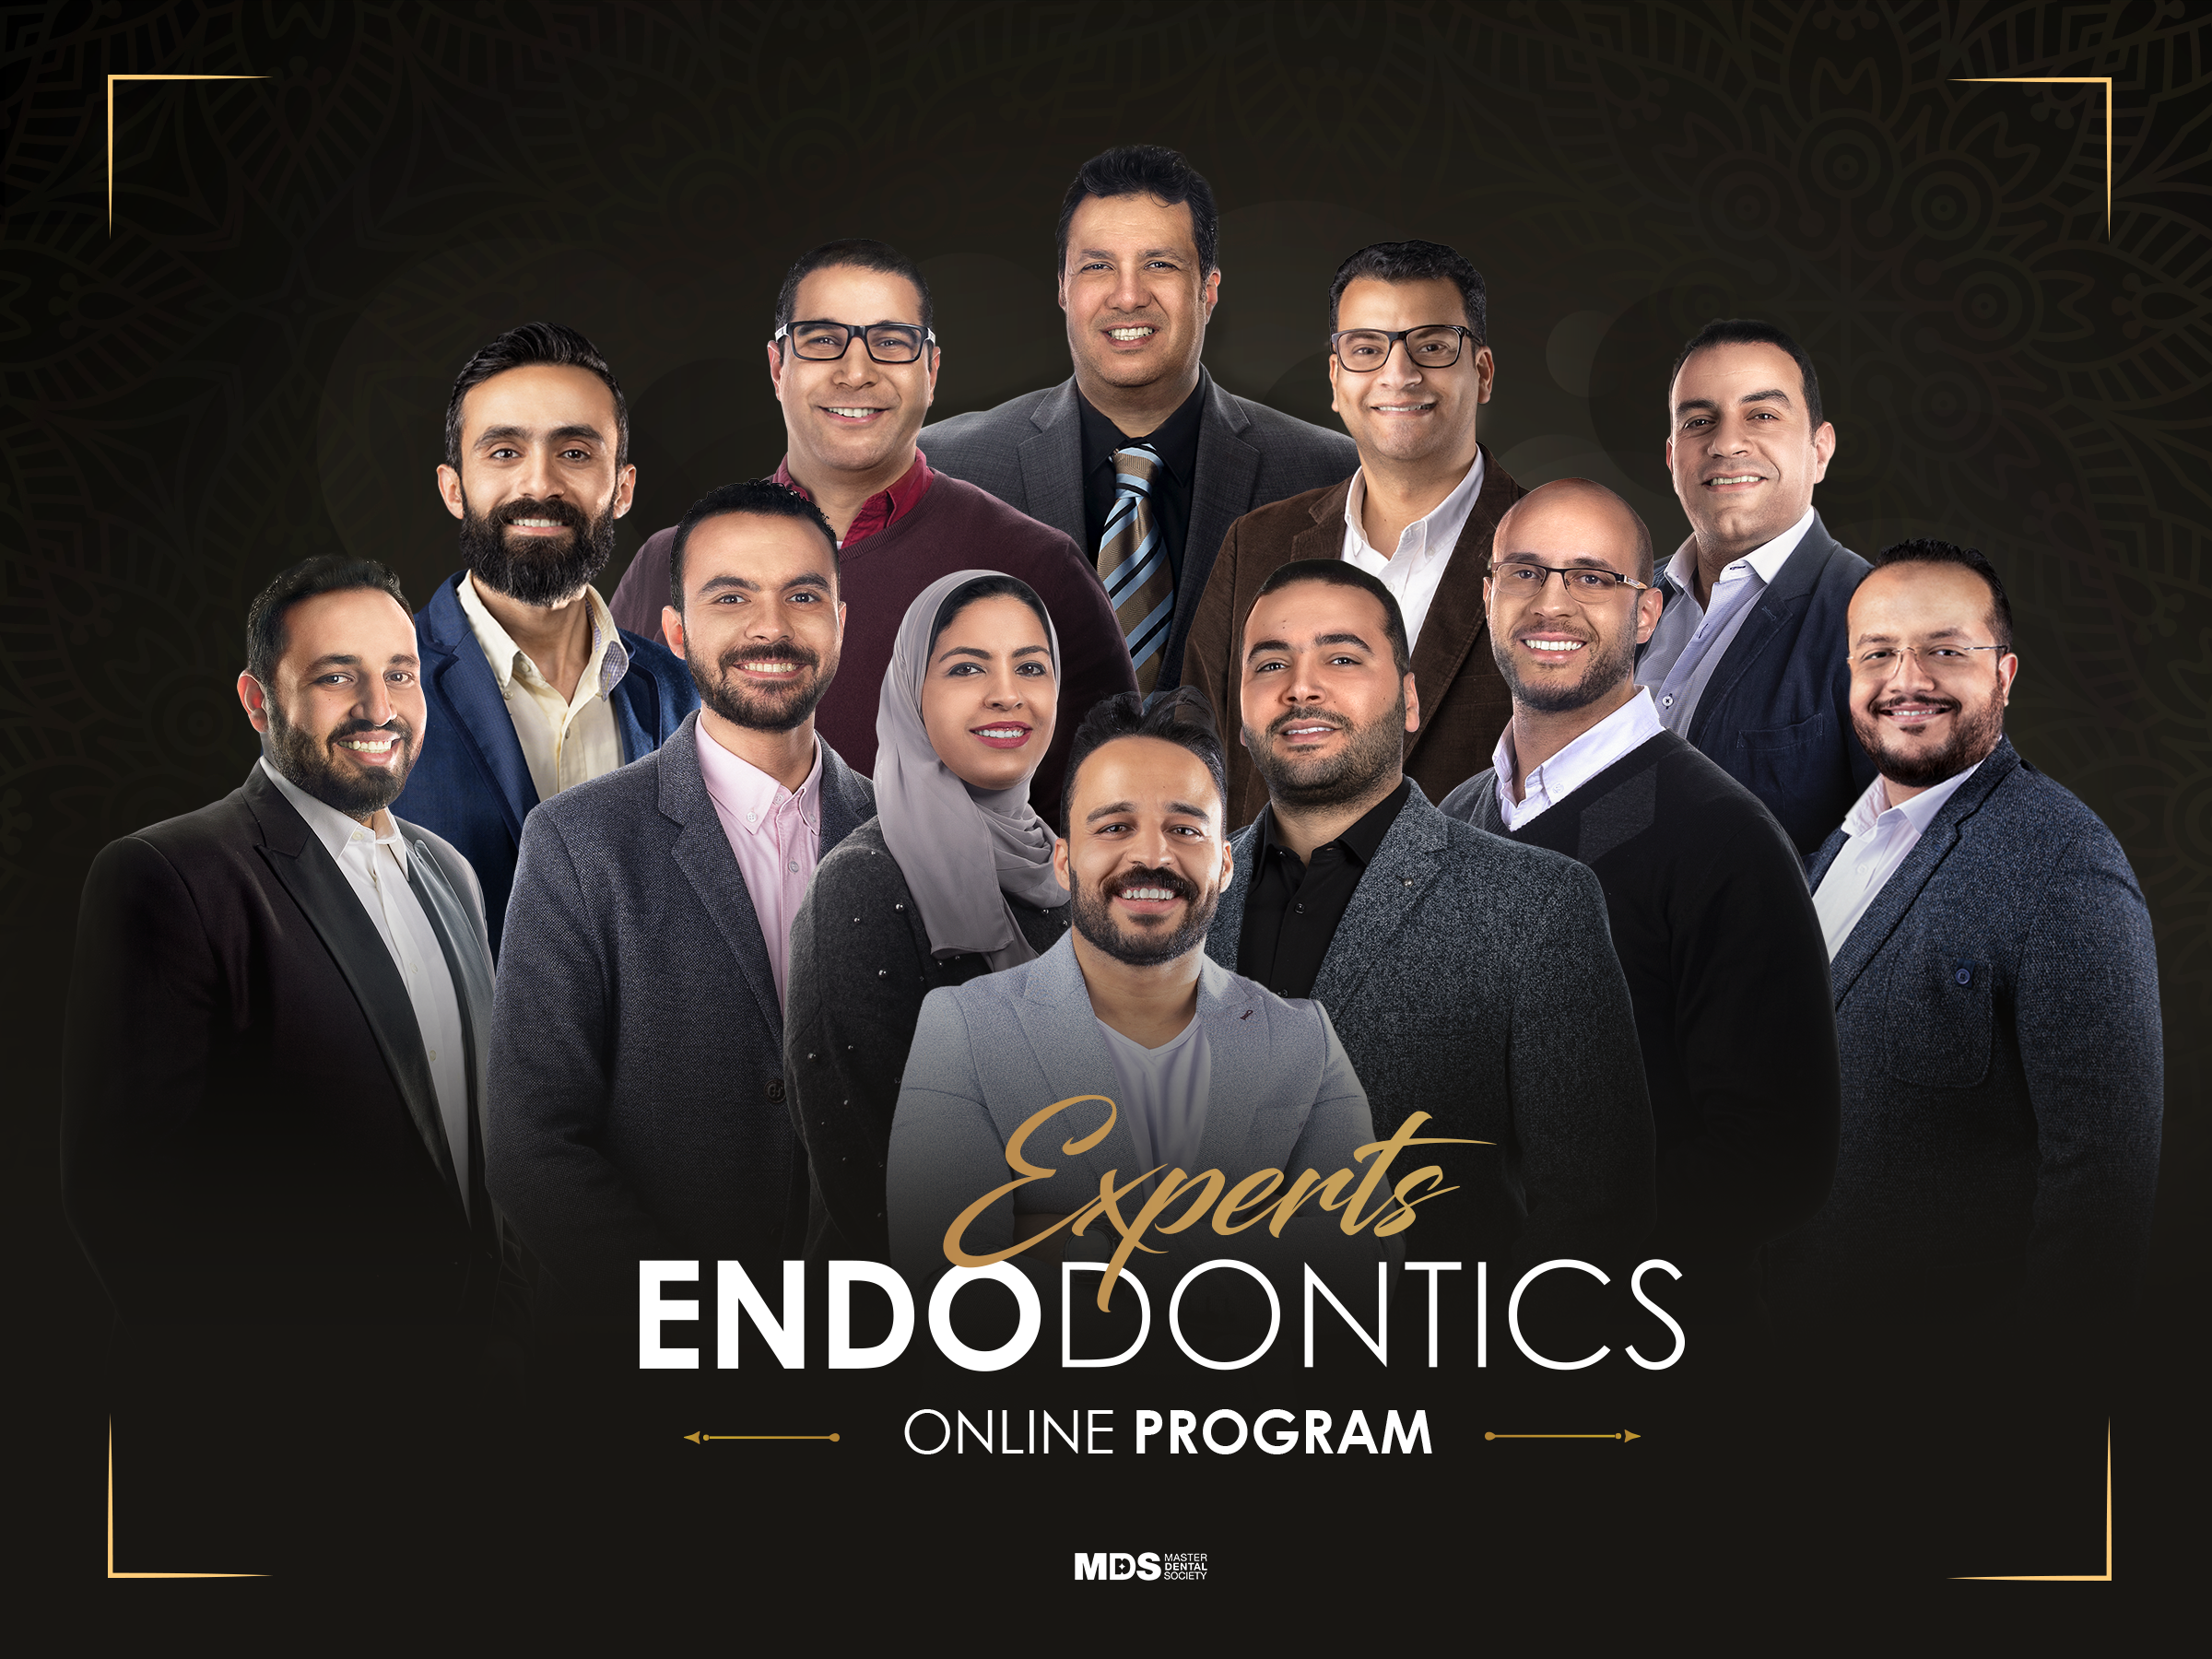 Endodontics Experts